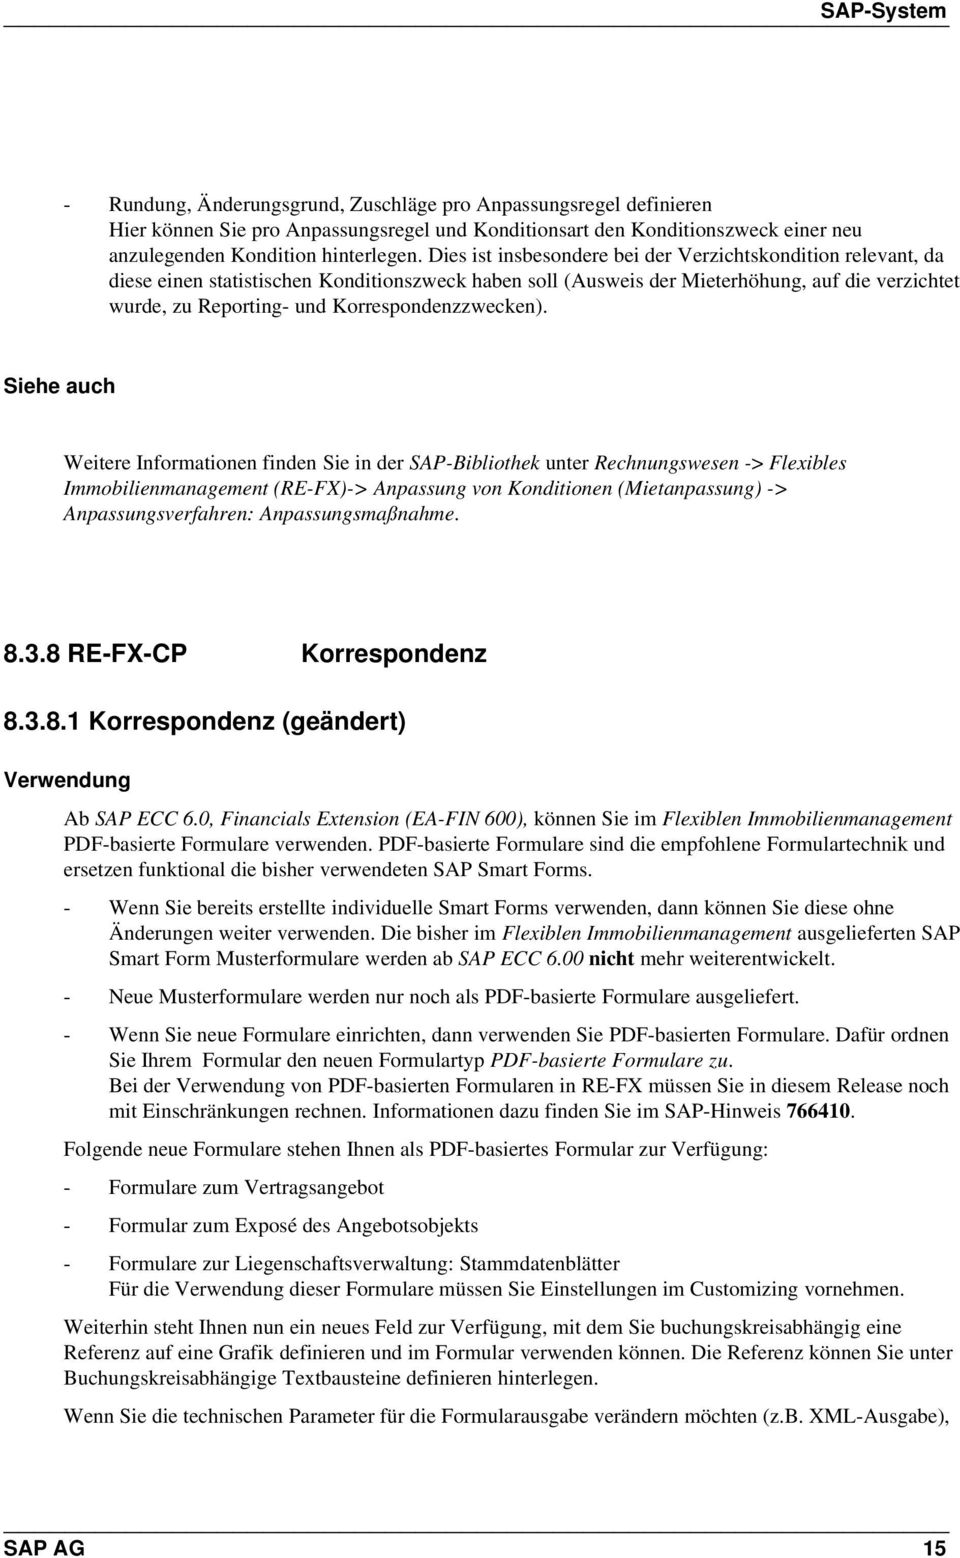 Korrespondenzzwecken). Immobilienmanagement (RE-FX)-> Anpassung von Konditionen (Mietanpassung) -> Anpassungsverfahren: Anpassungsmaßnahme. 8.3.8 RE-FX-CP Korrespondenz 8.3.8.1 Korrespondenz (geändert) Ab SAP ECC 6.